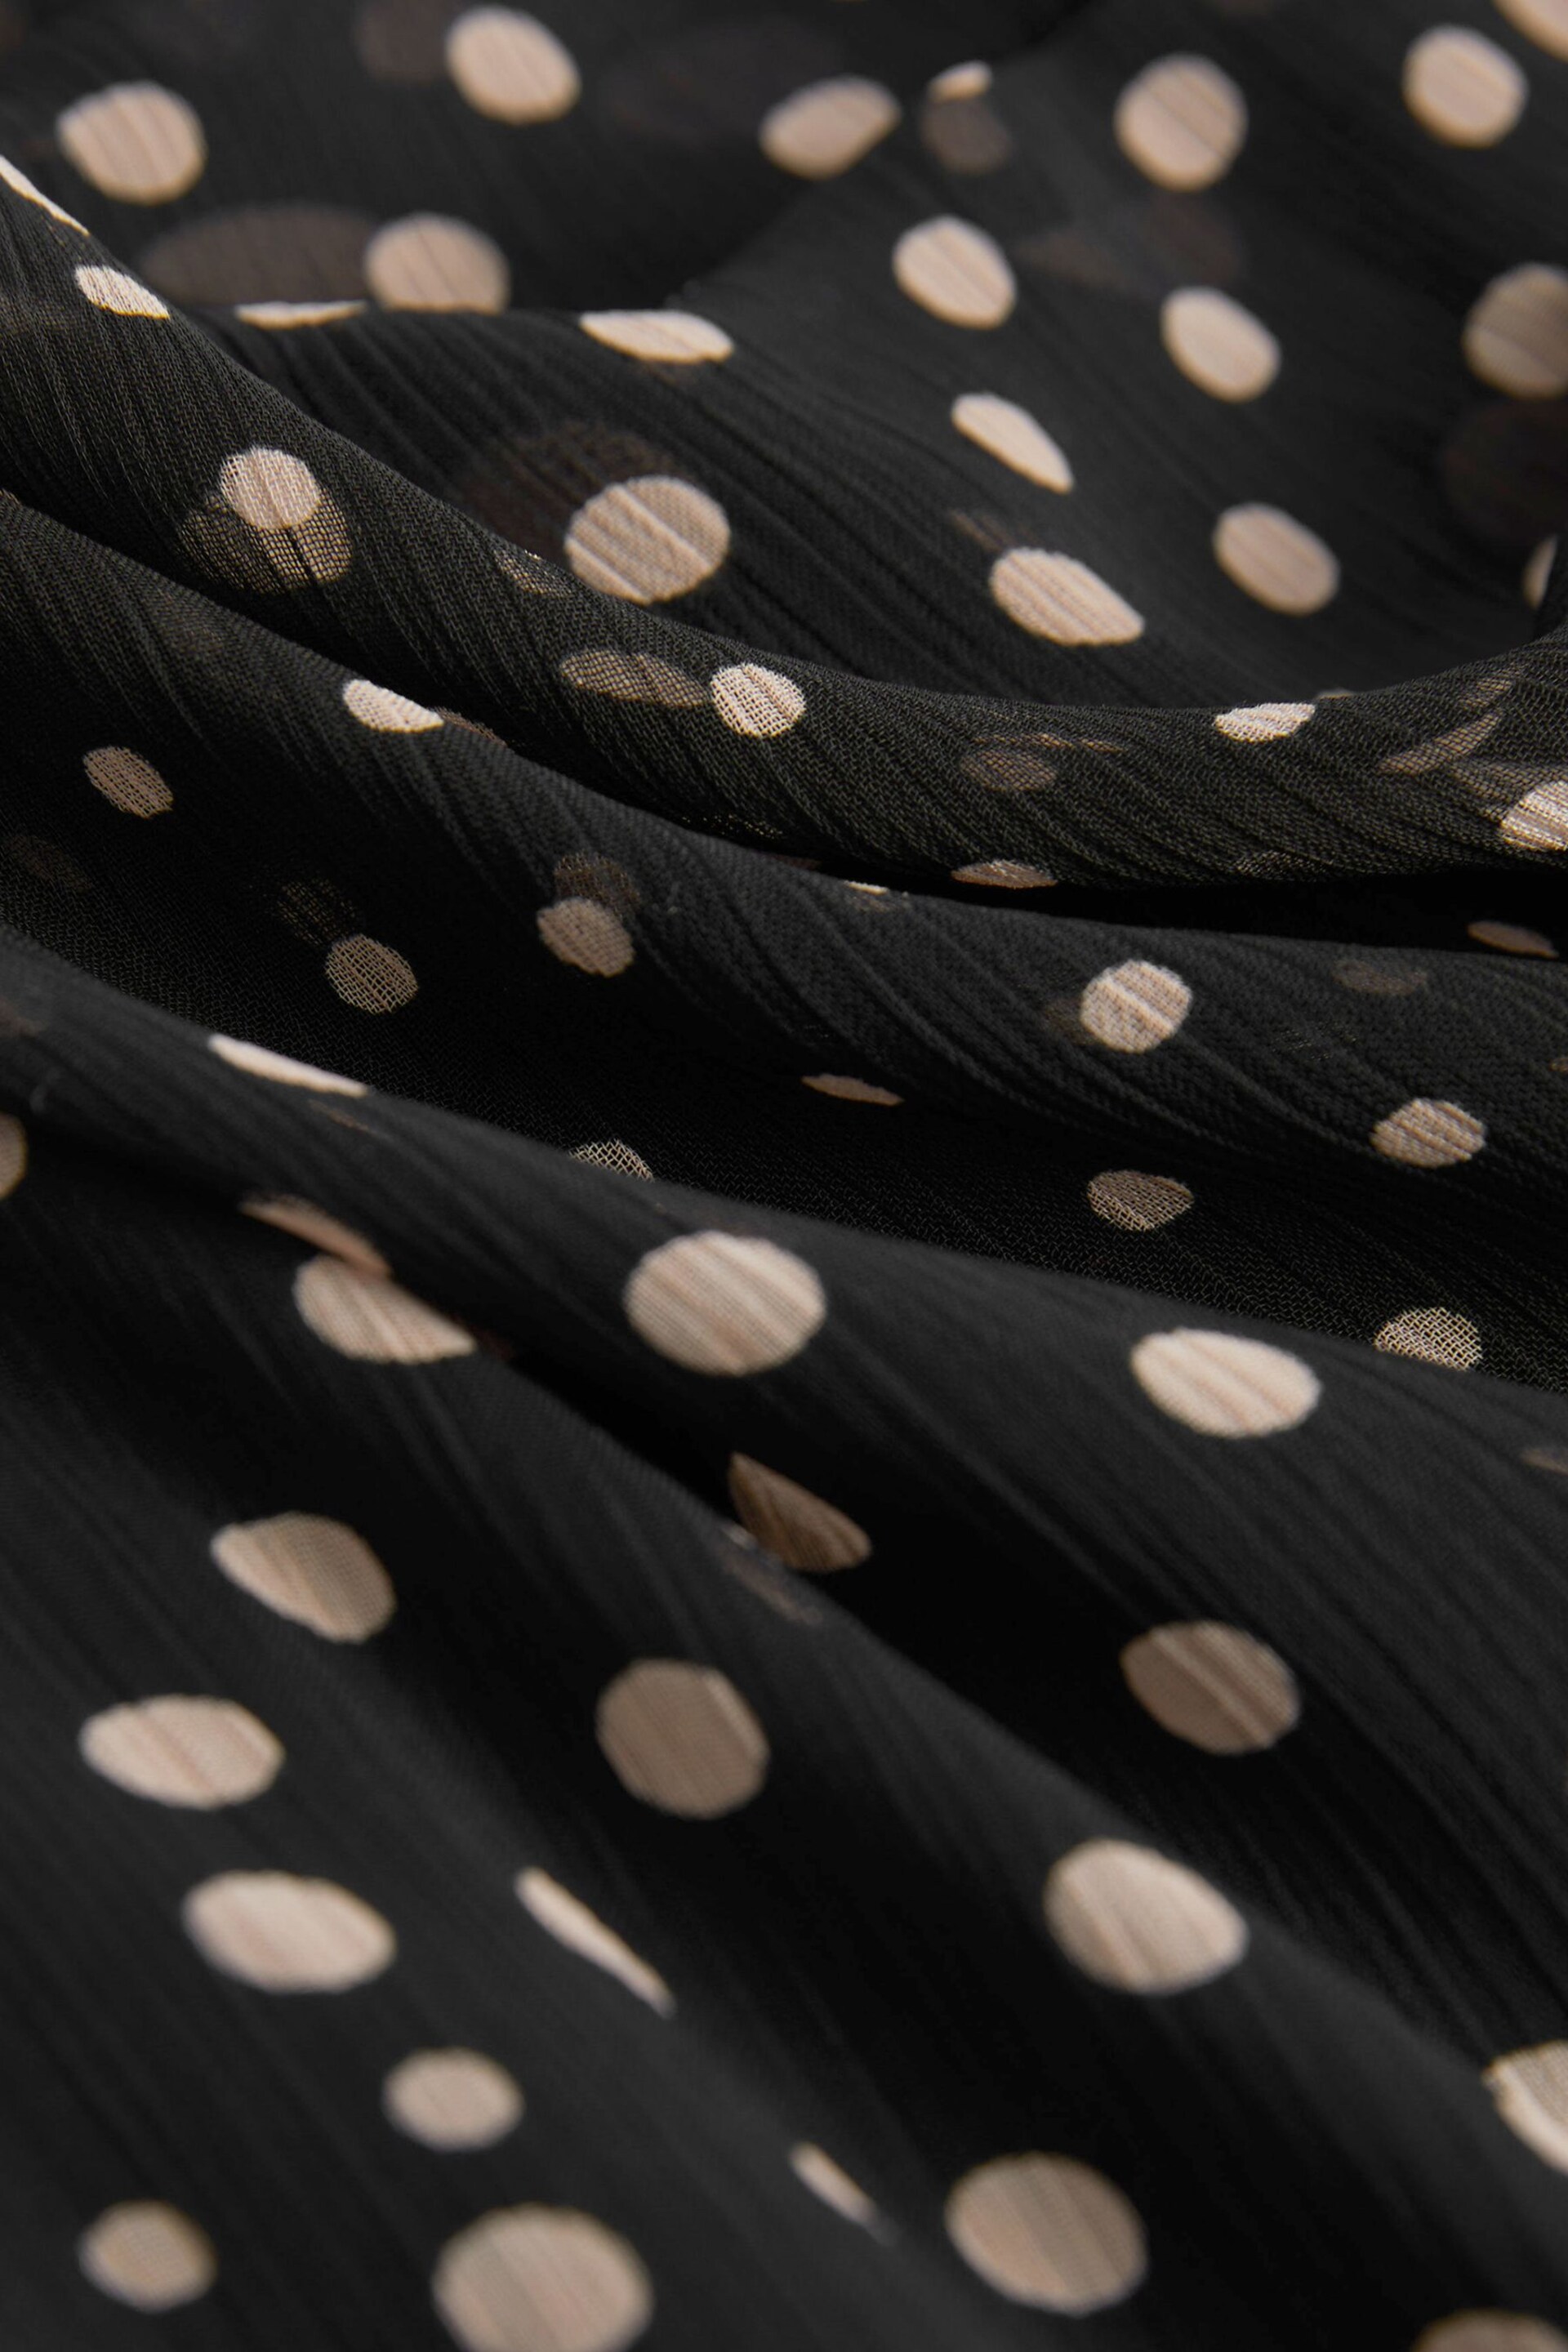 Black Chiffon Midi Dress - Image 6 of 6